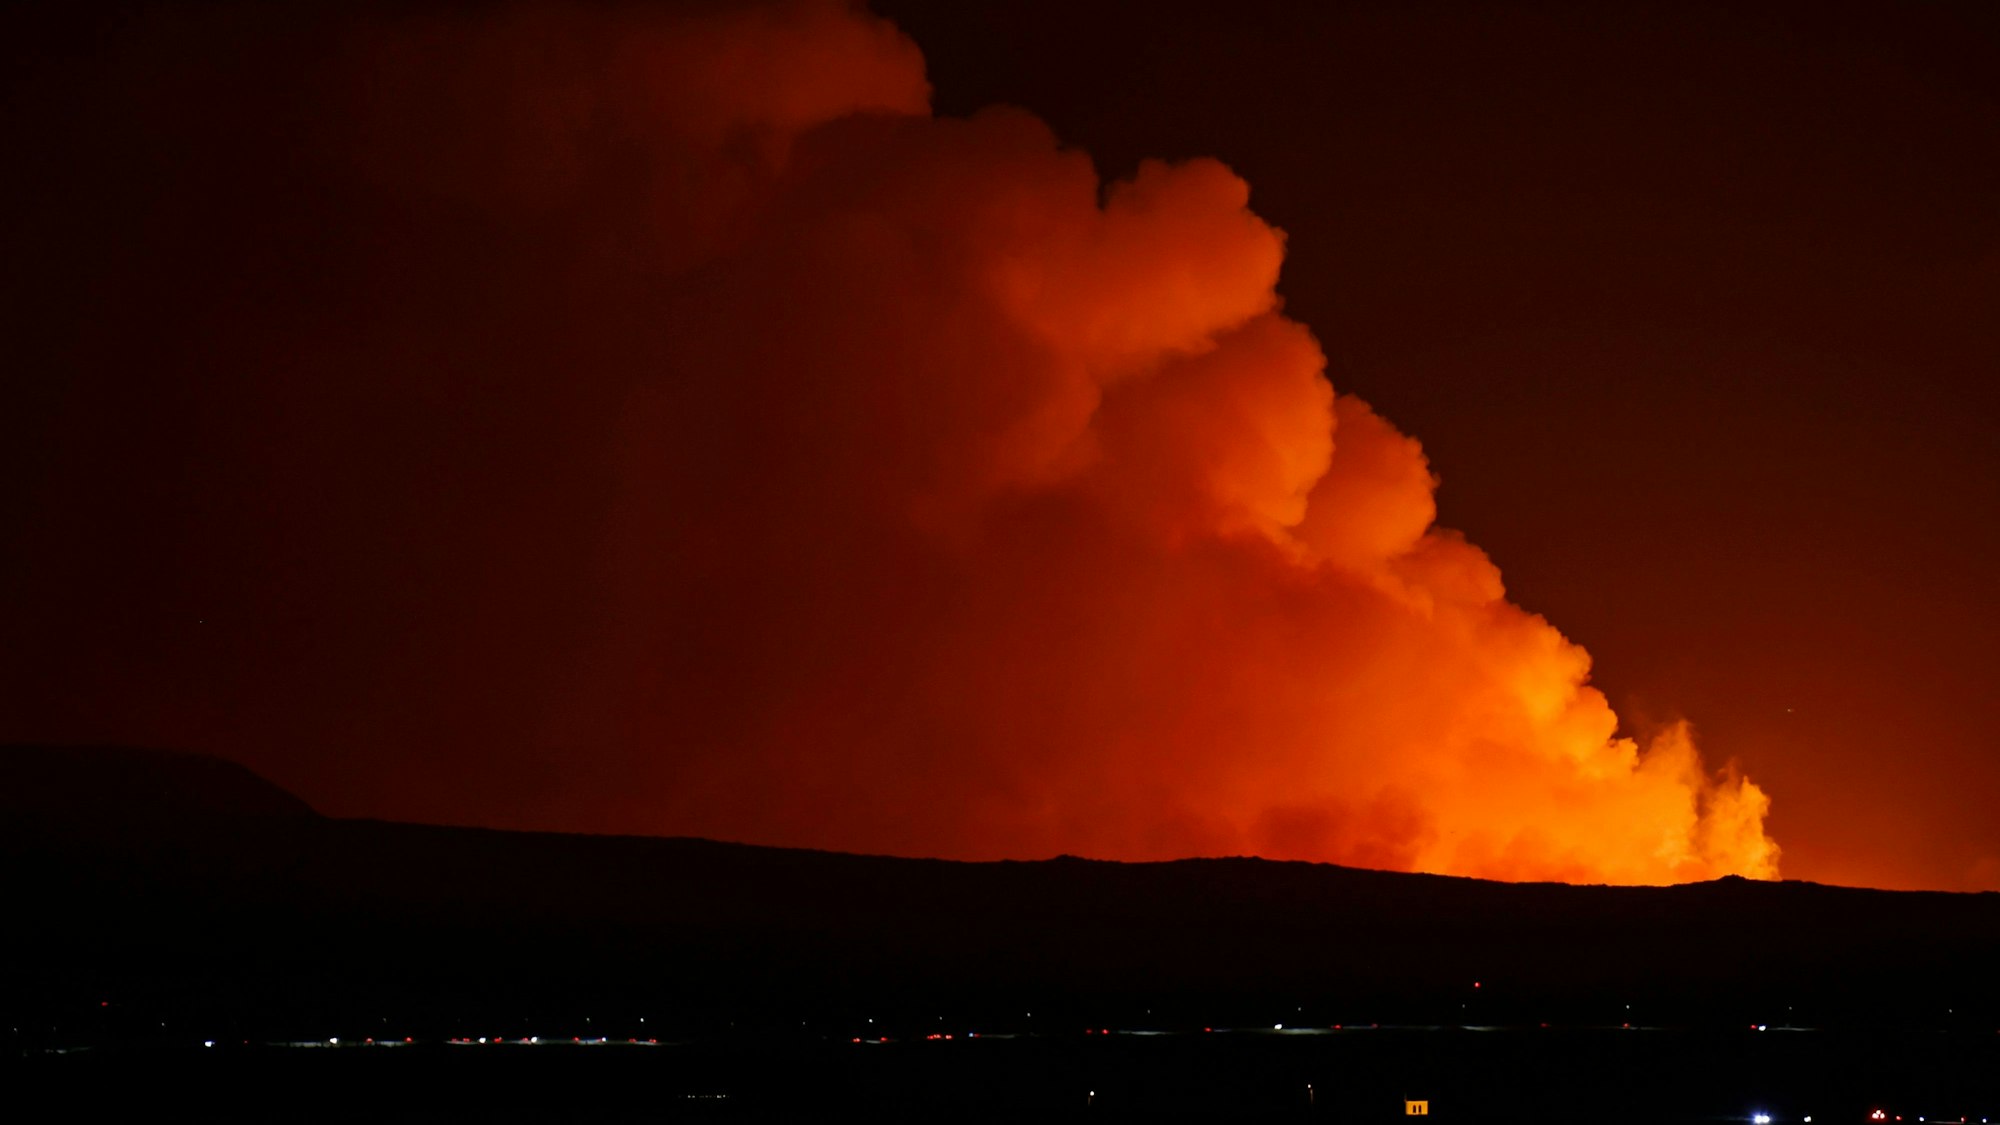 Vulkanausbruch auf Island: Eine gewaltige orange Rauchsäule ist zu sehen.